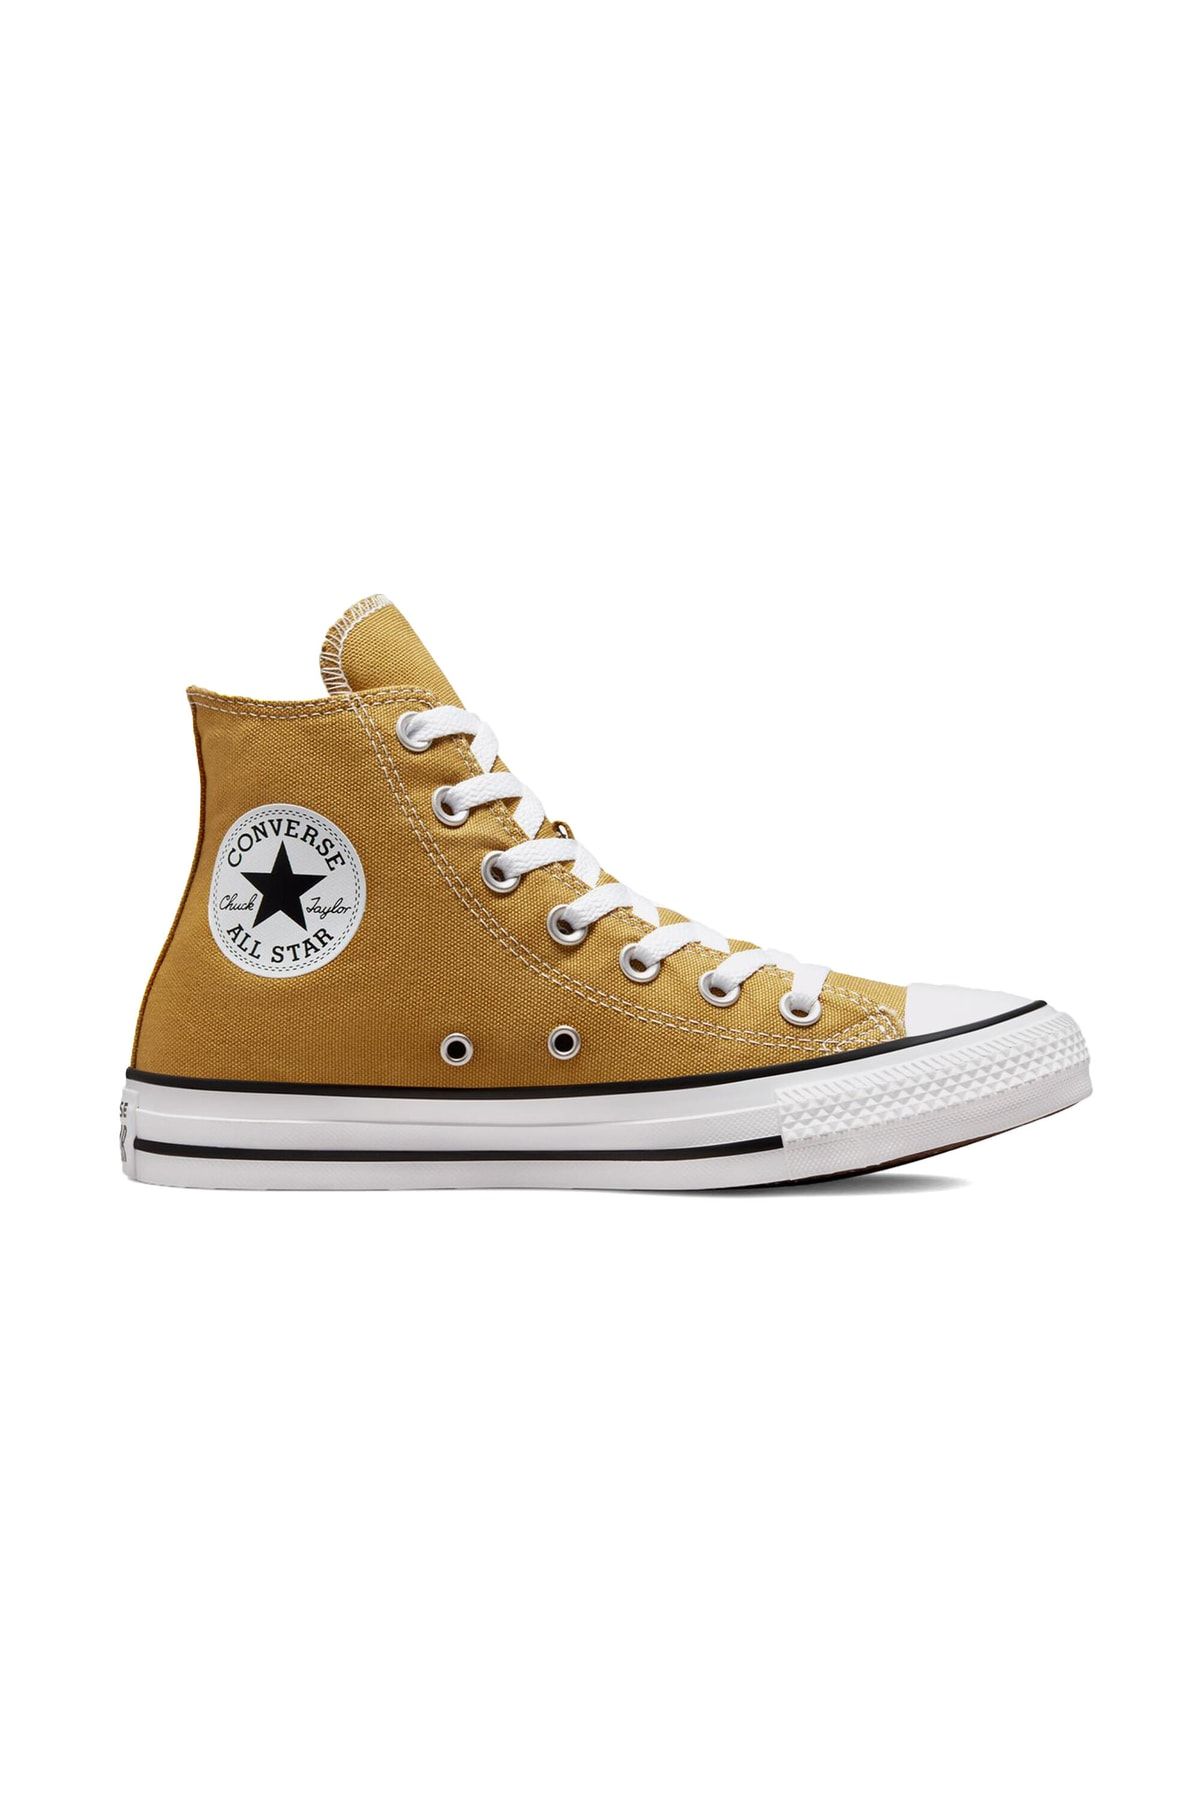 Converse Chuck Taylor All Star Seasonal Color Kadın Günlük Ayakkabı A02785c Sarı